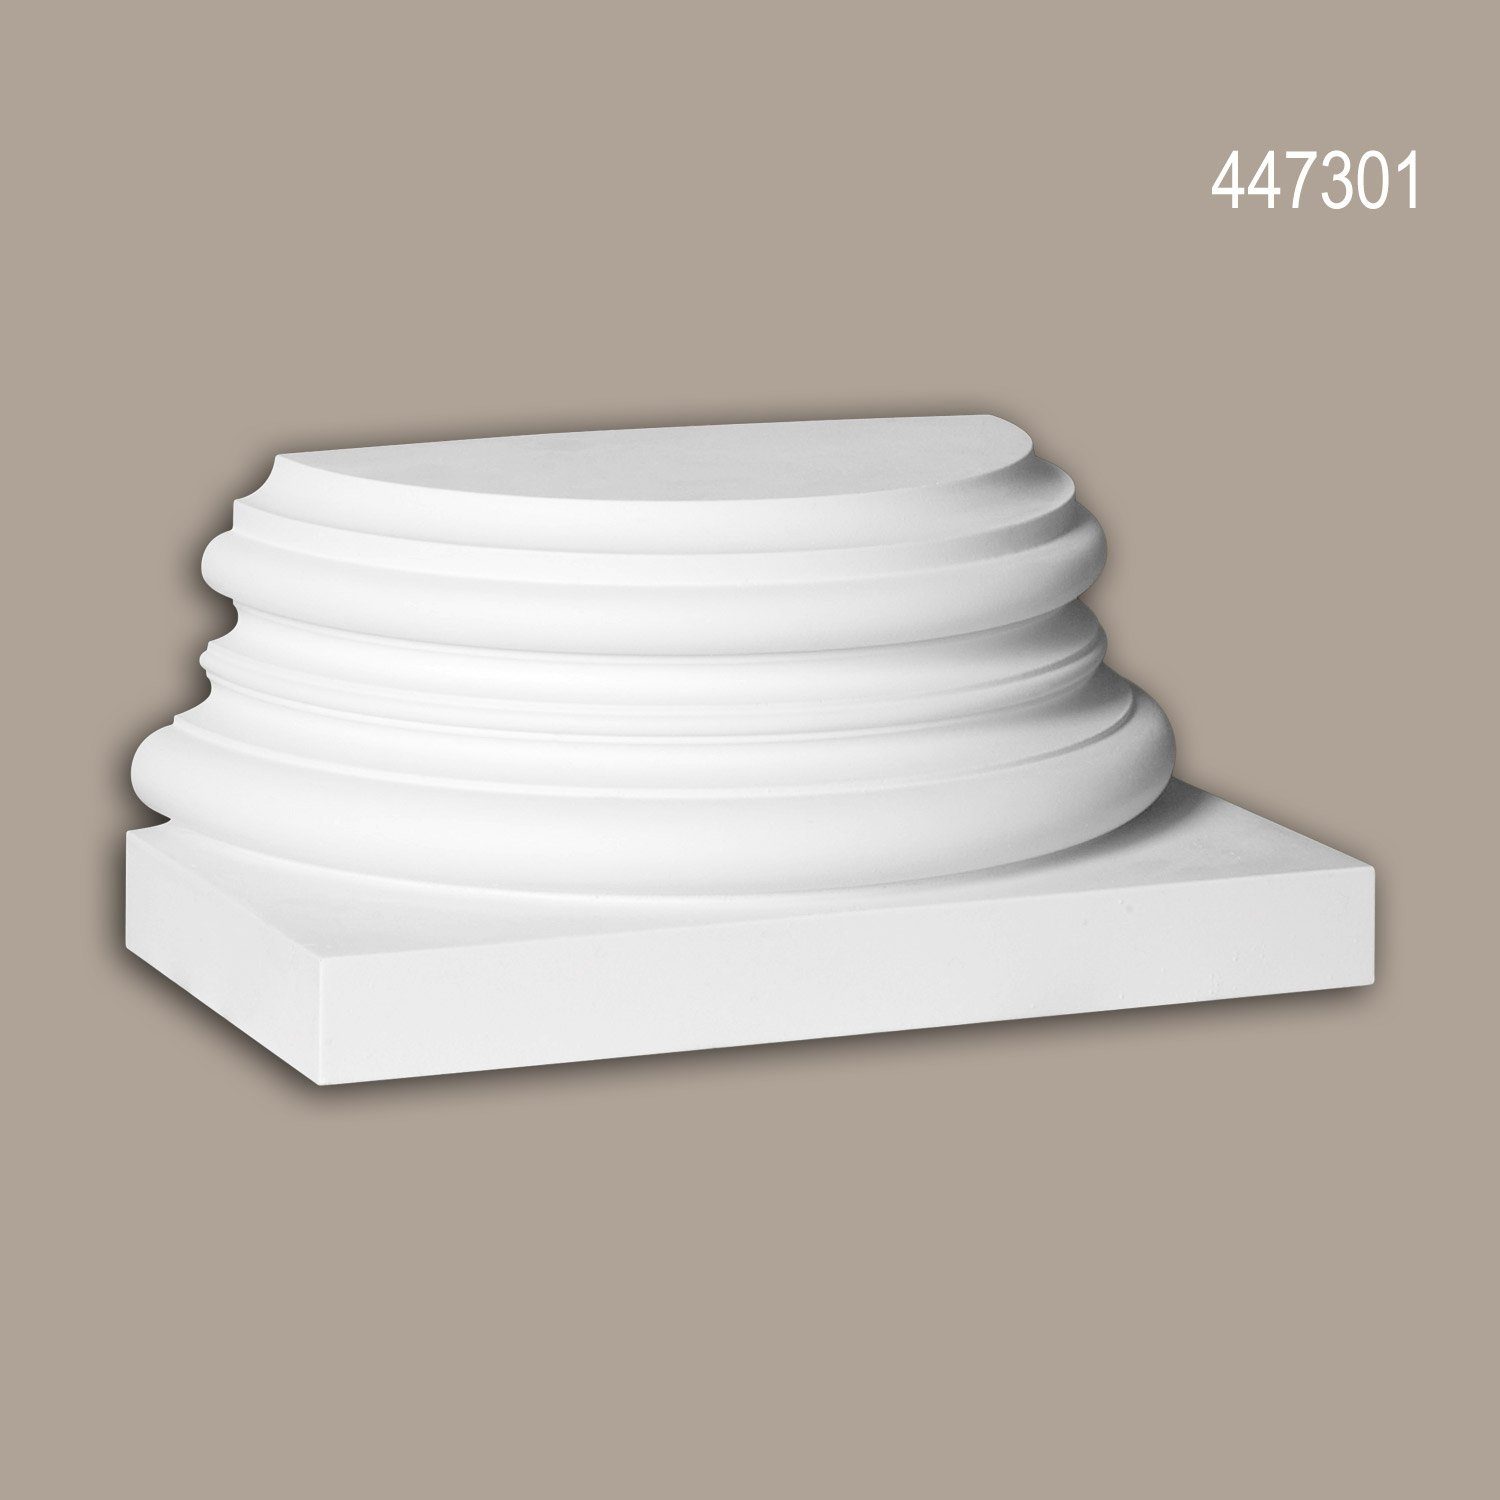 Profhome Wanddekoobjekt 447301 (Halbsäulen Sockel, 1 St., Fassadenstuck, Säule, Zierelement, Außenstuck), weiß, vorgrundiert, für Fassadendekoration, Stil: Korinthisch